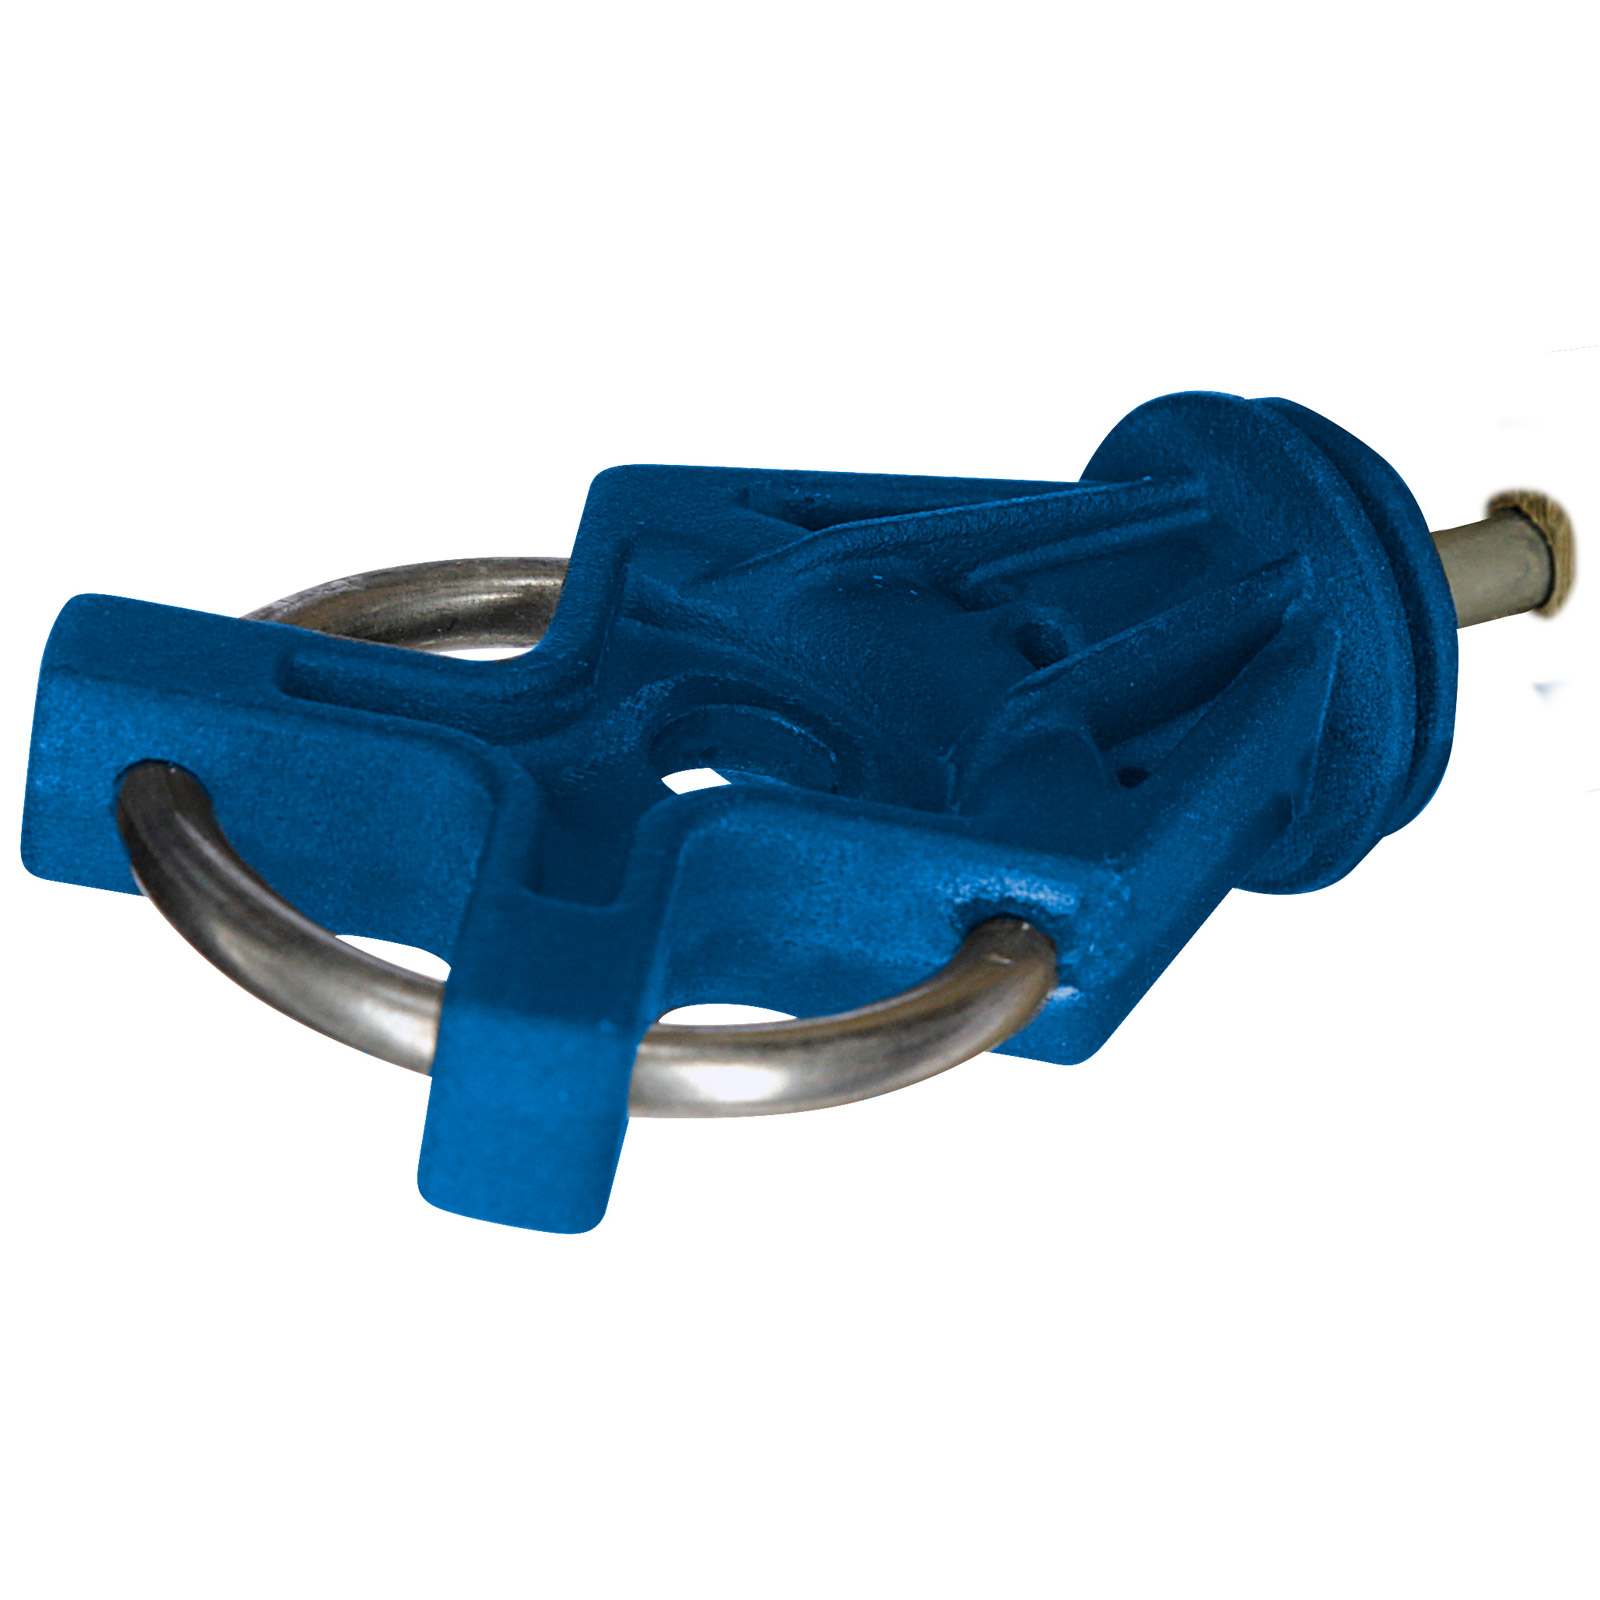 10x Gate handle insulator X³ Premium galvanised, blue